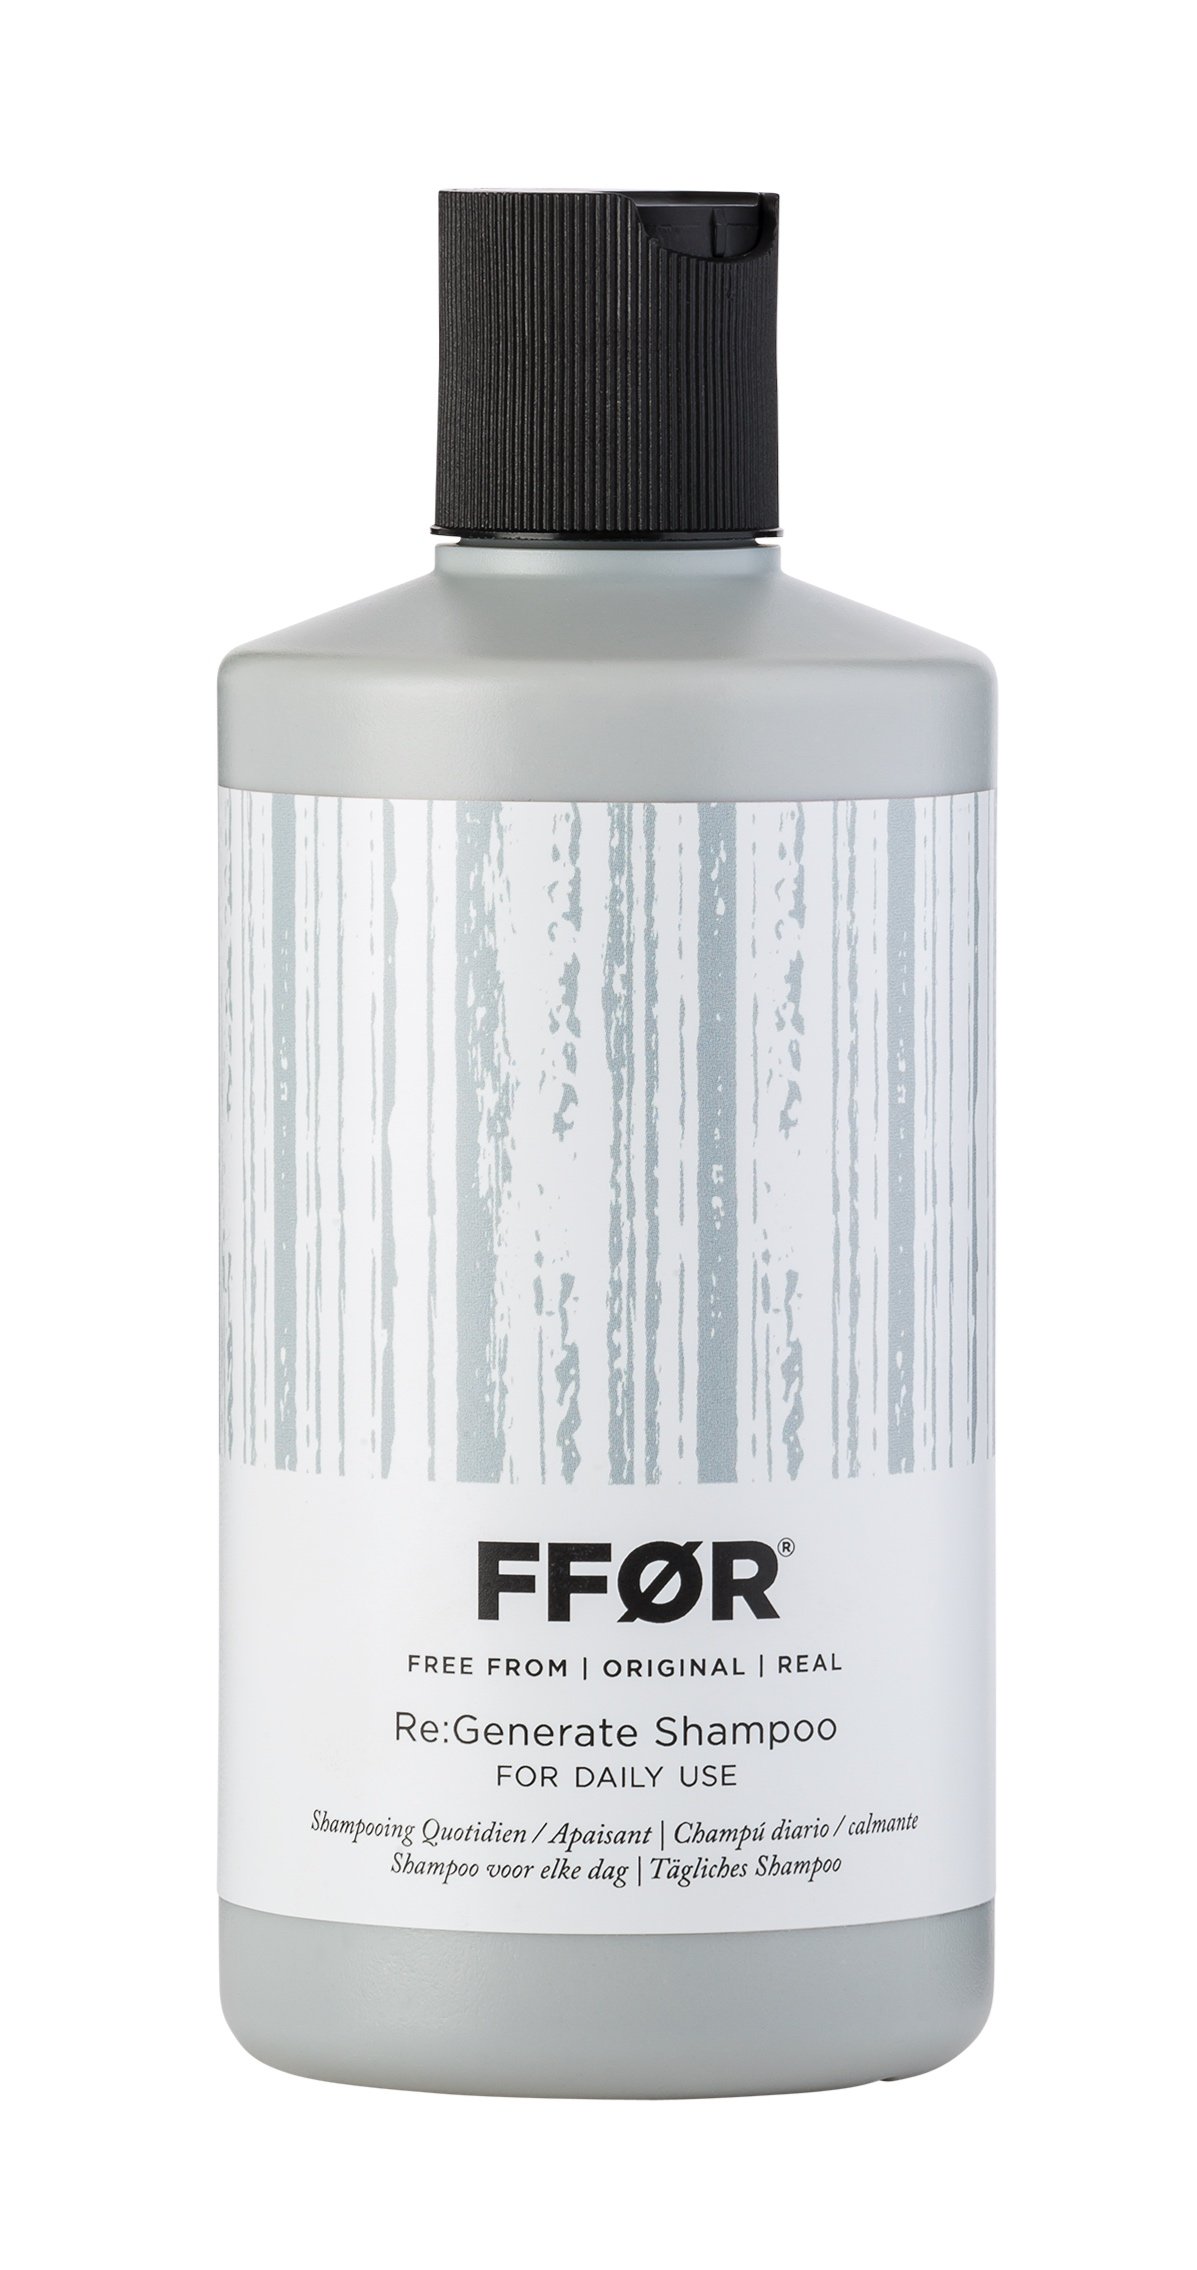 FFOR+ReGenerate+Shampoo+300ml+%C2%A318.jpg